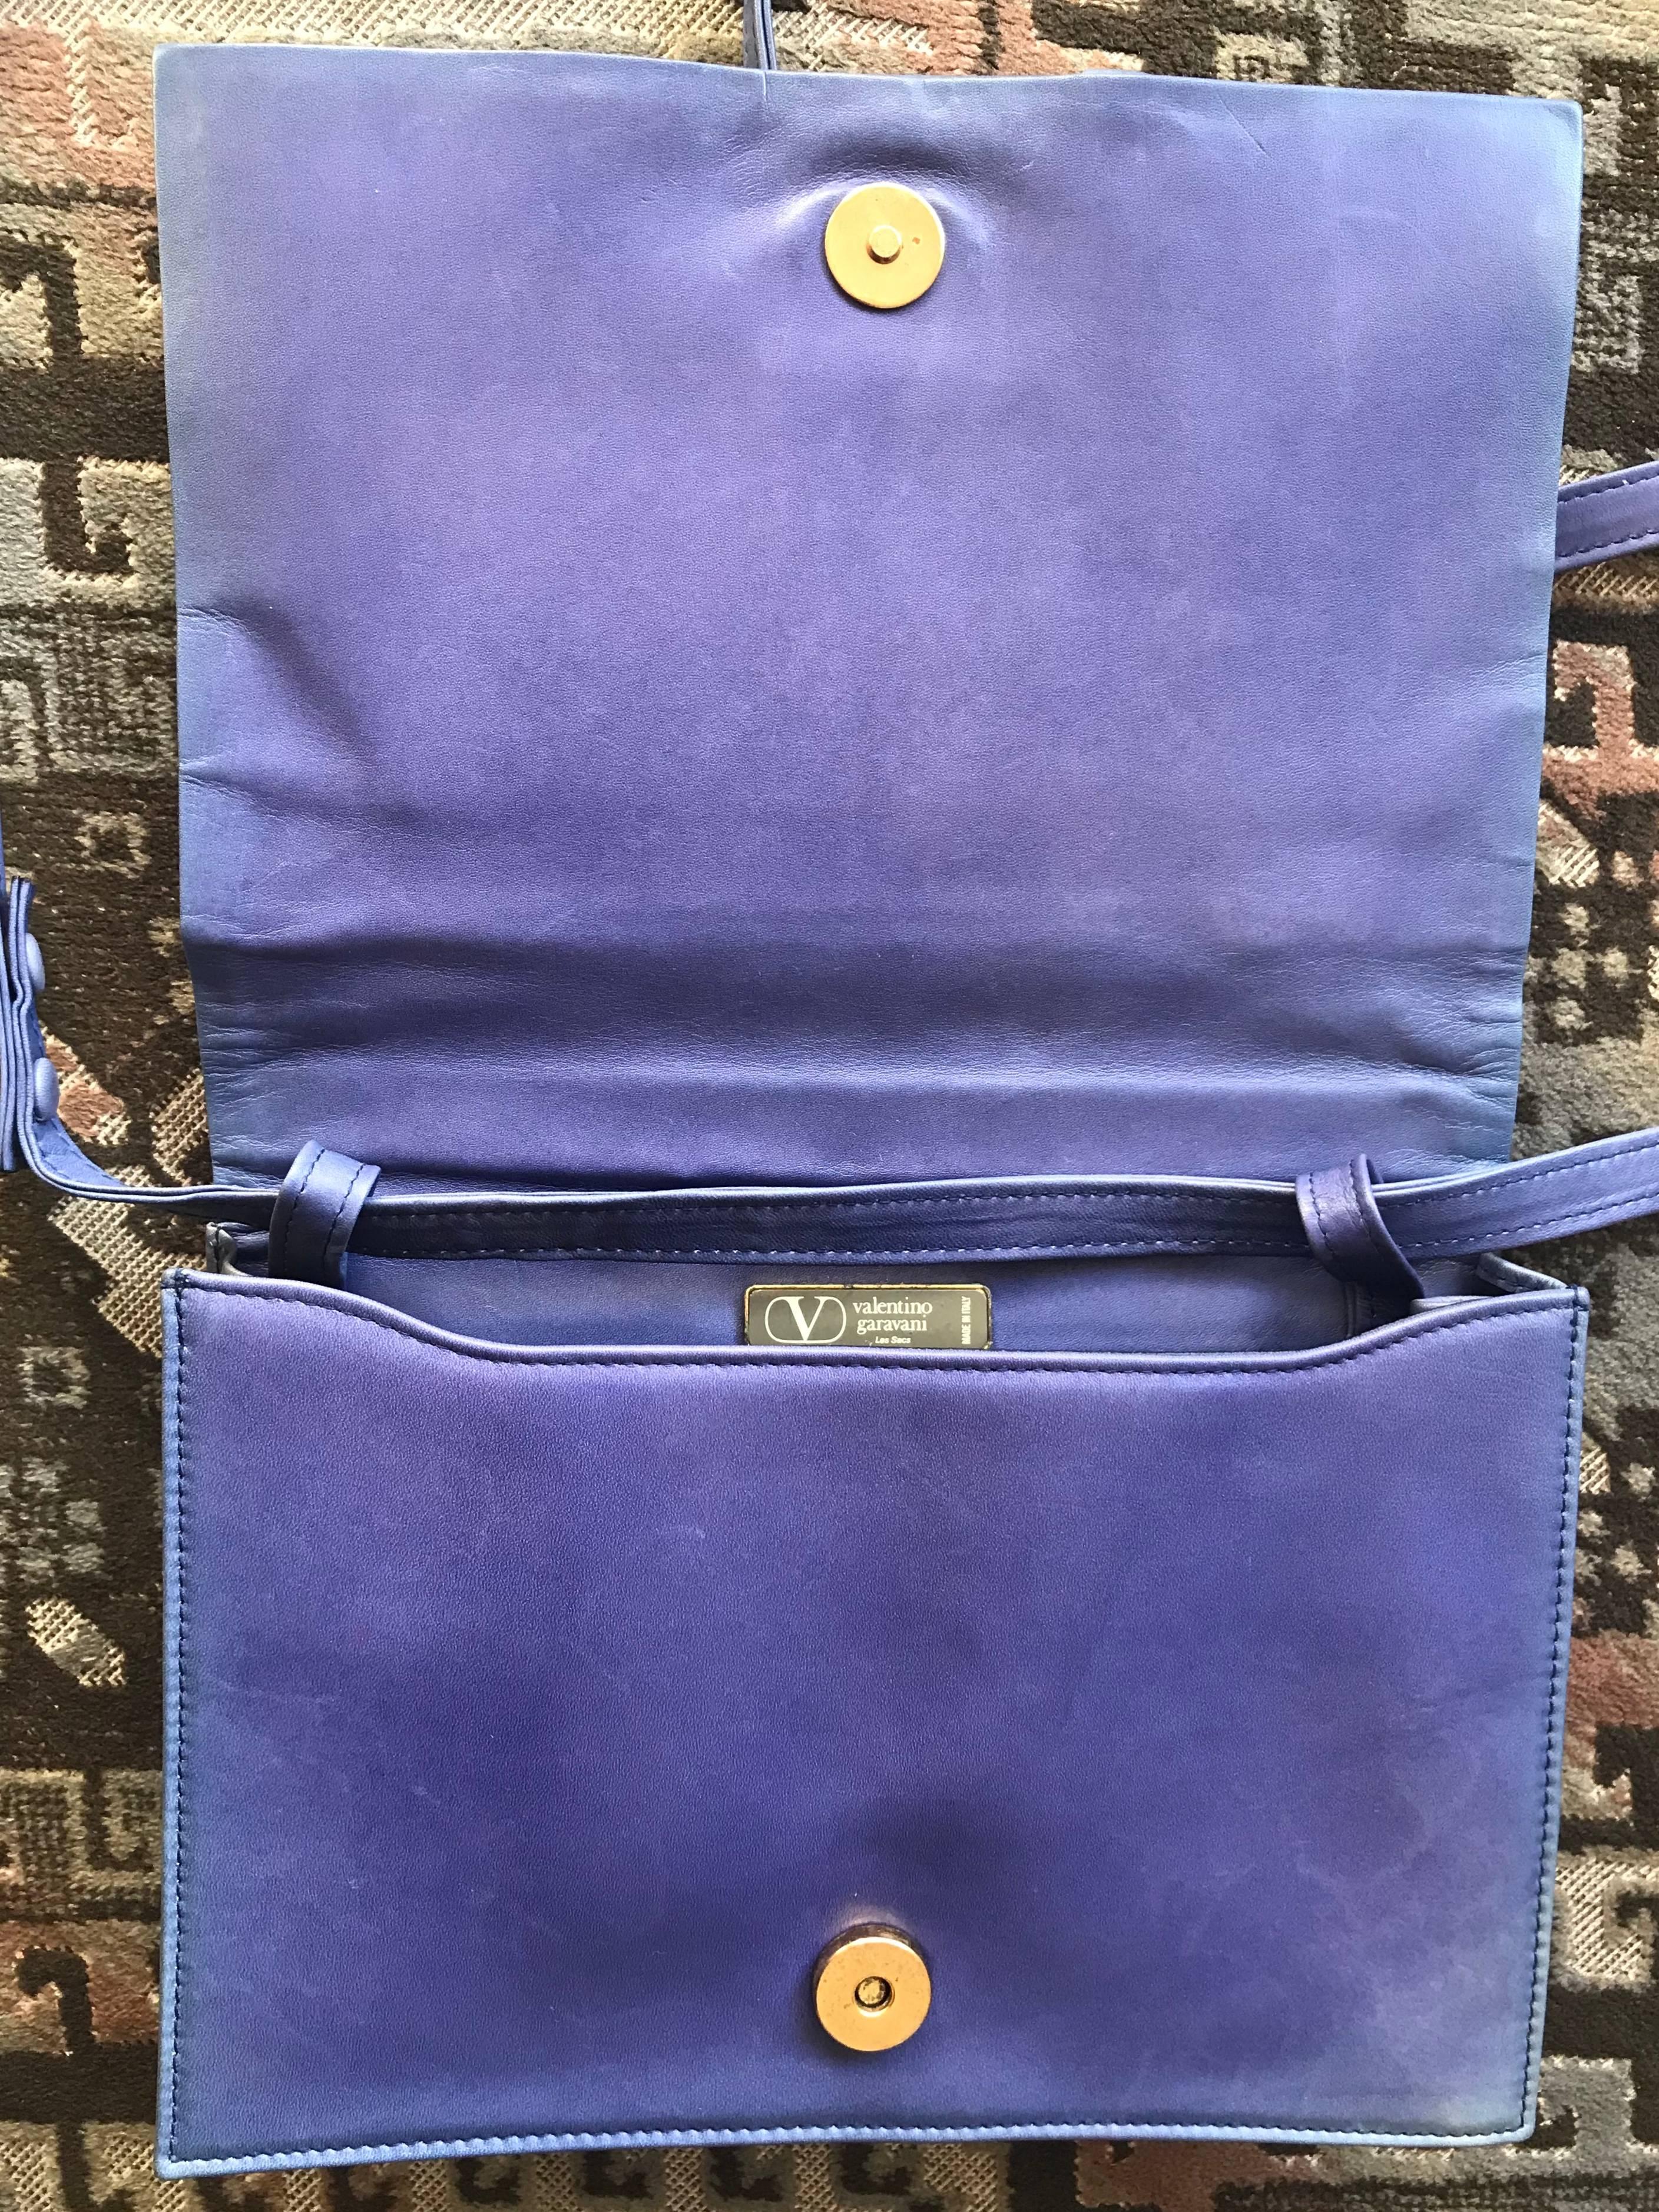 Vintage Valentino Garavani blue leather clutch shoulder bag with logo motif  For Sale 2